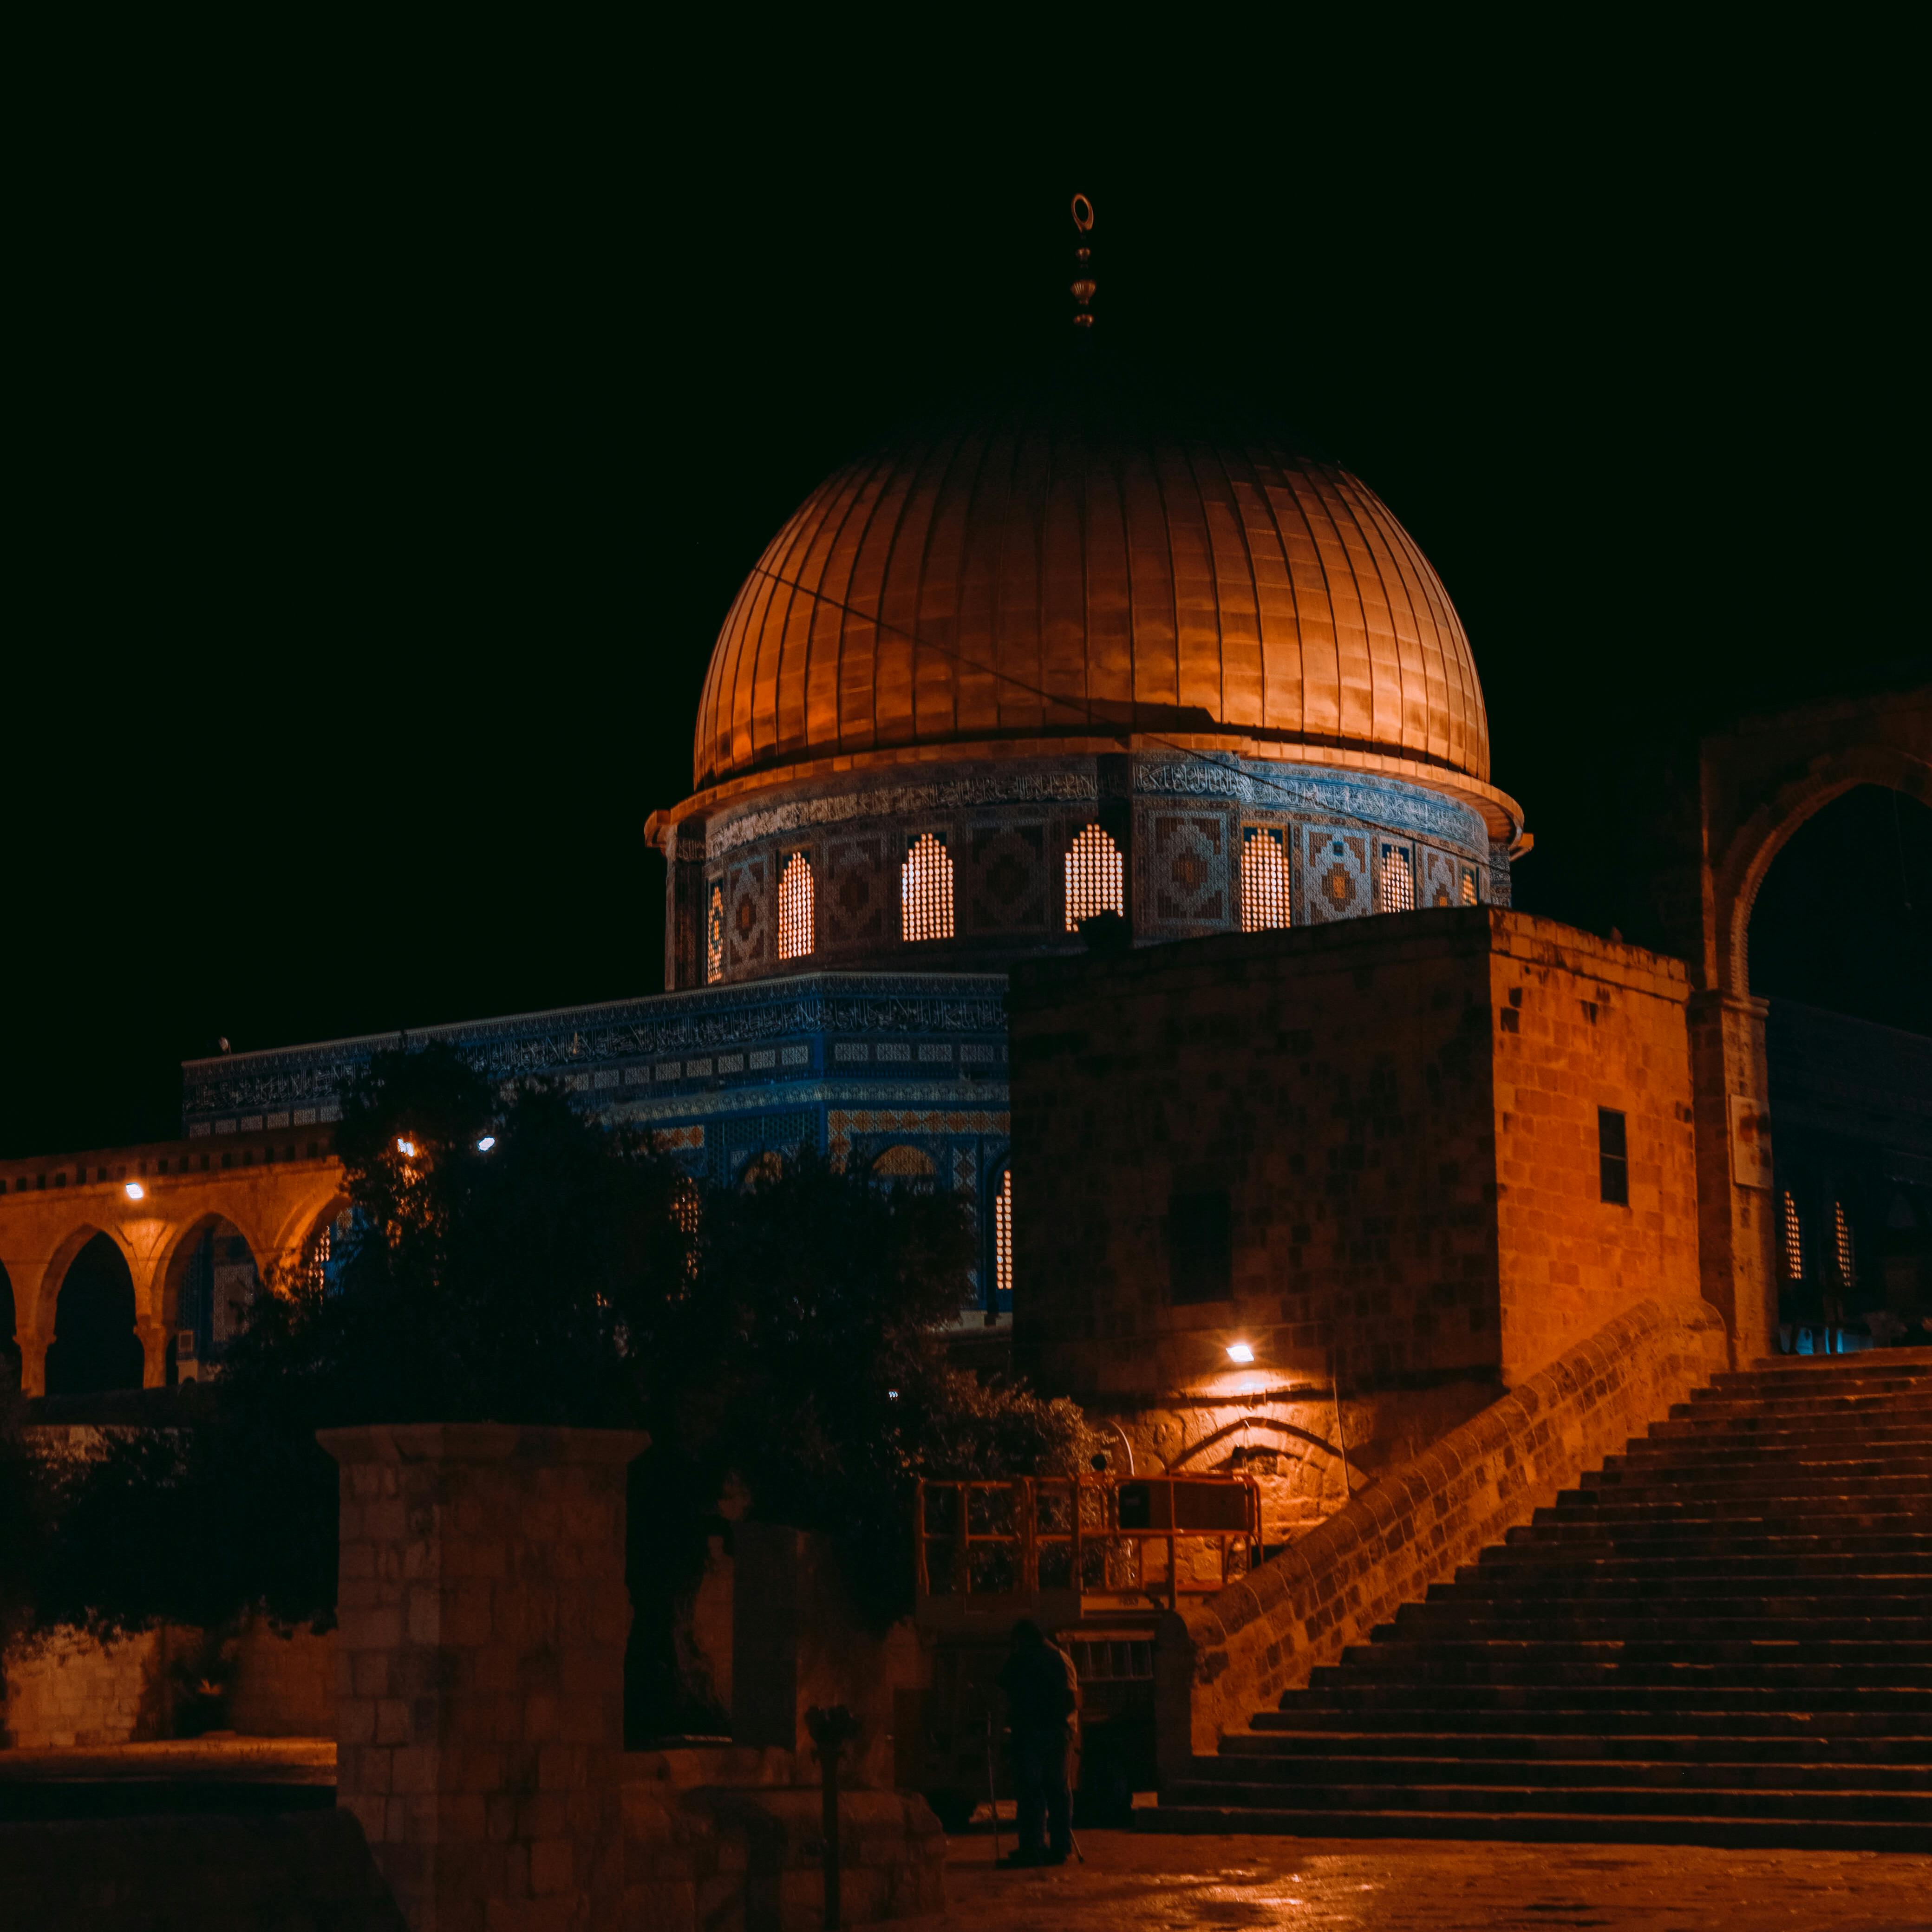 10701 Al Aqsa Images Stock Photos  Vectors  Shutterstock